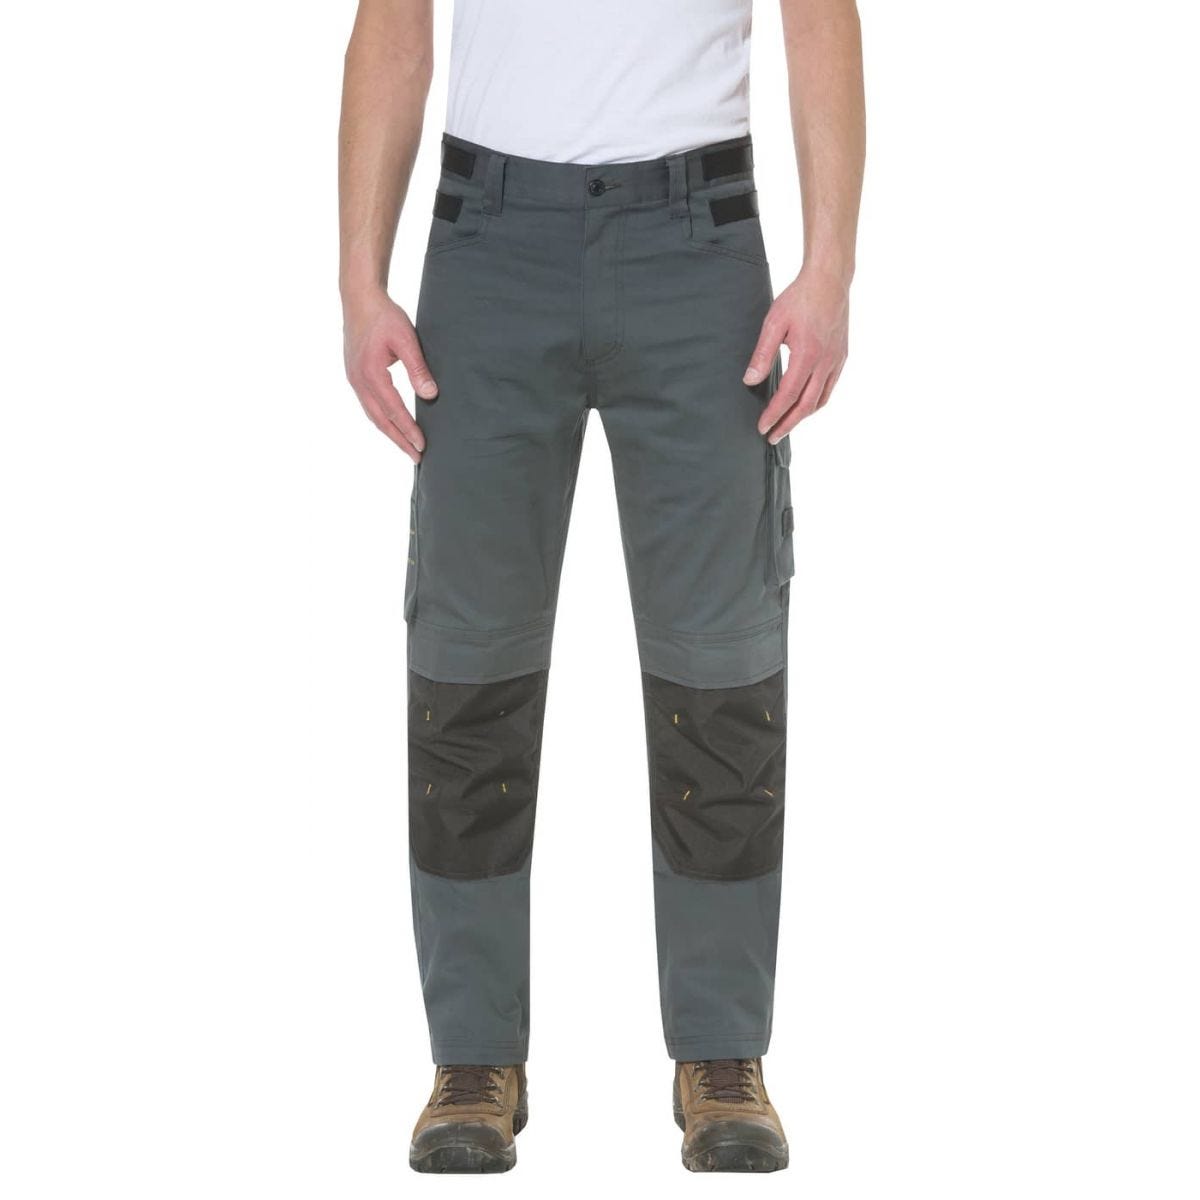 Pantalon de travail Custom Lite Gris et Noir - Caterpillar - Taille 40 0